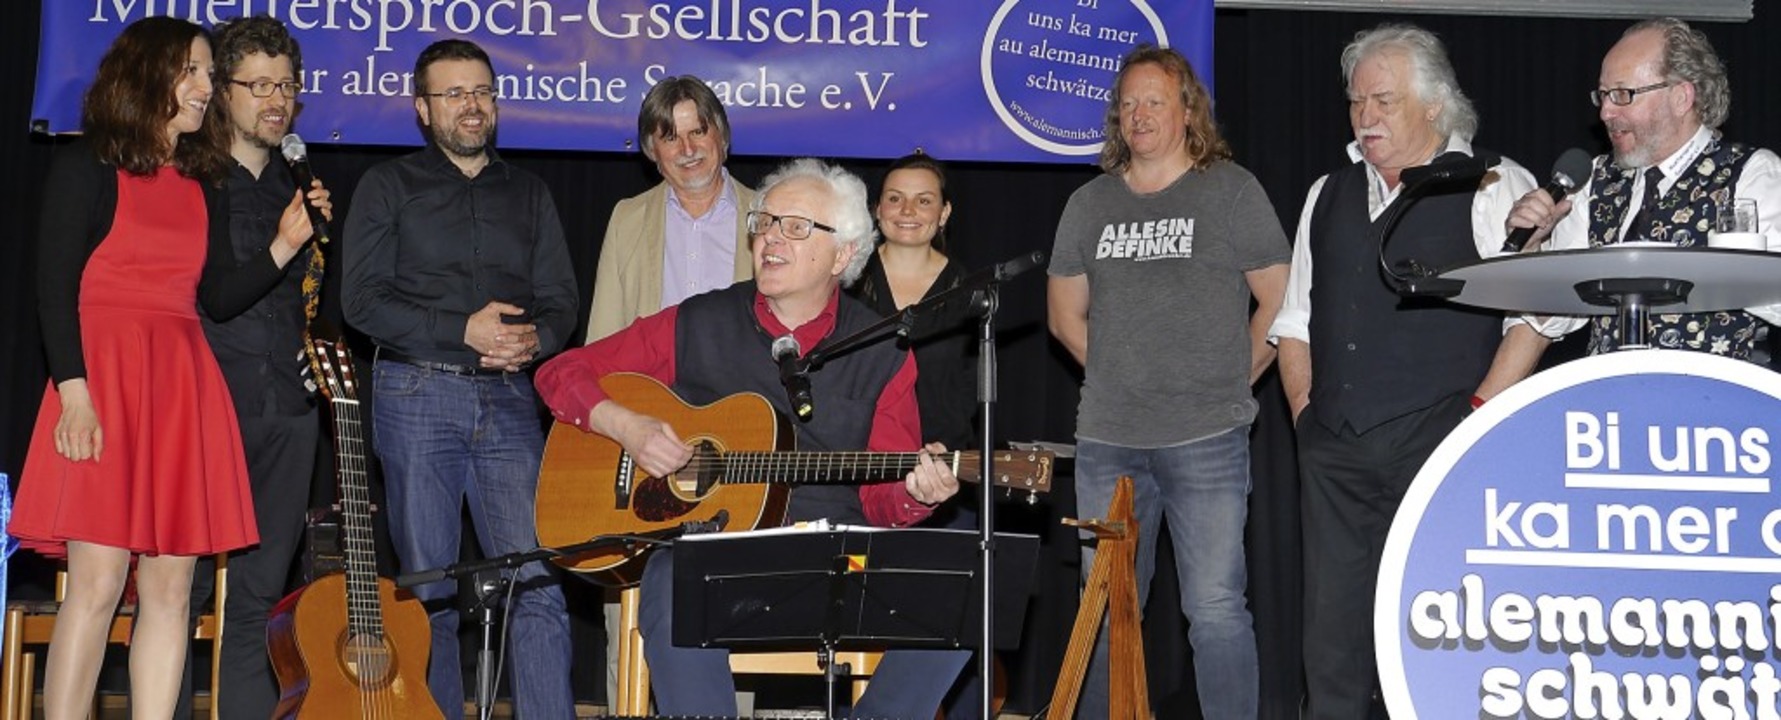 Isabelle Grussenmeyer mit Mann Thomas,...Hack (von links) bei der Mundart-Nacht  | Foto: Christel Hülter-Hassler